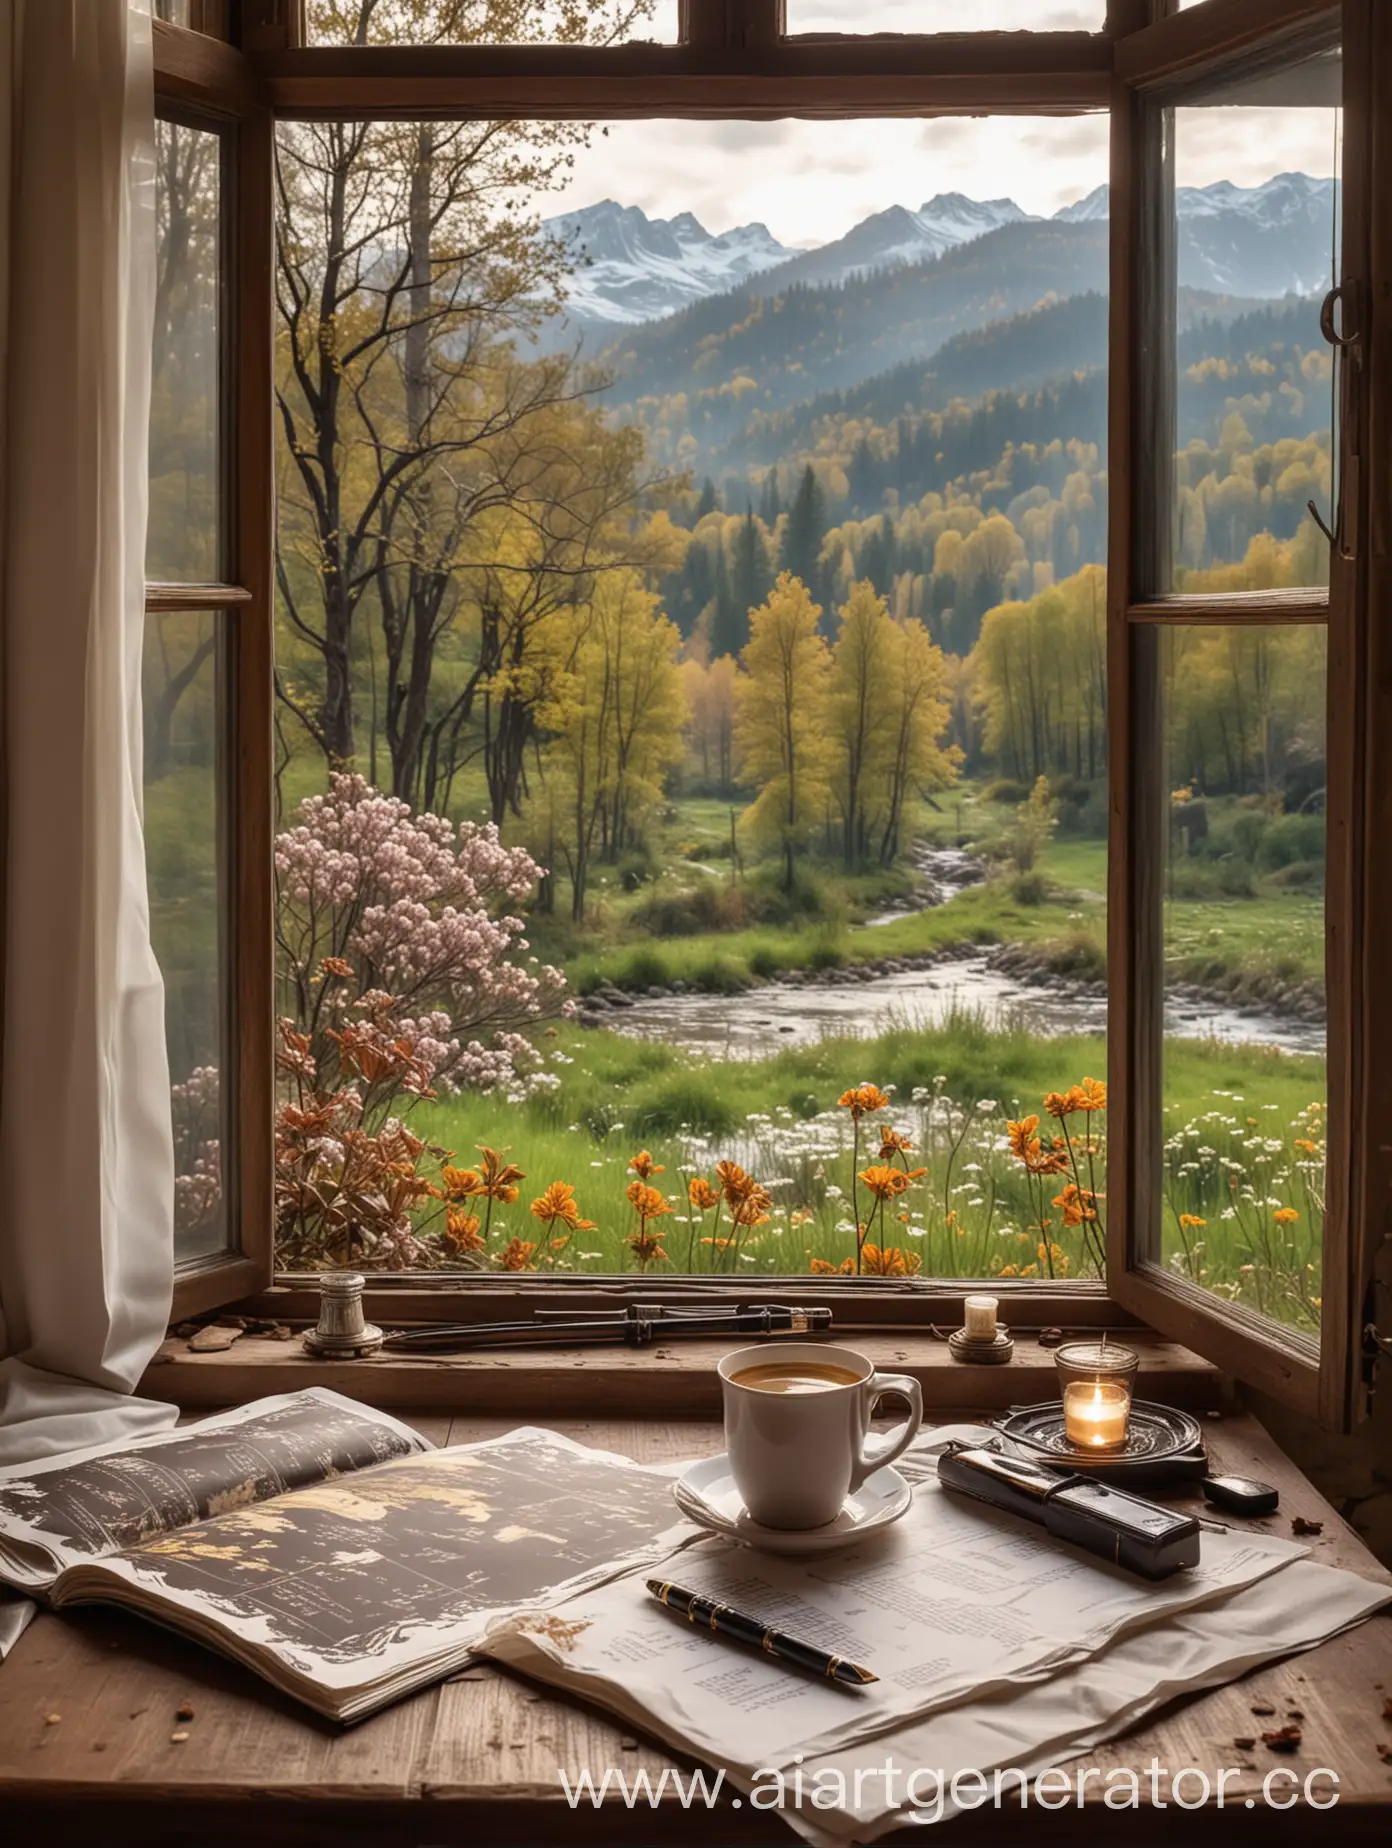 кофе с пенкой элитный шоколад в фольге старинный стол у раскрытого окна весенние сумерки горы на горизонте лес сад перьевая ручка на листе бумаги тишина